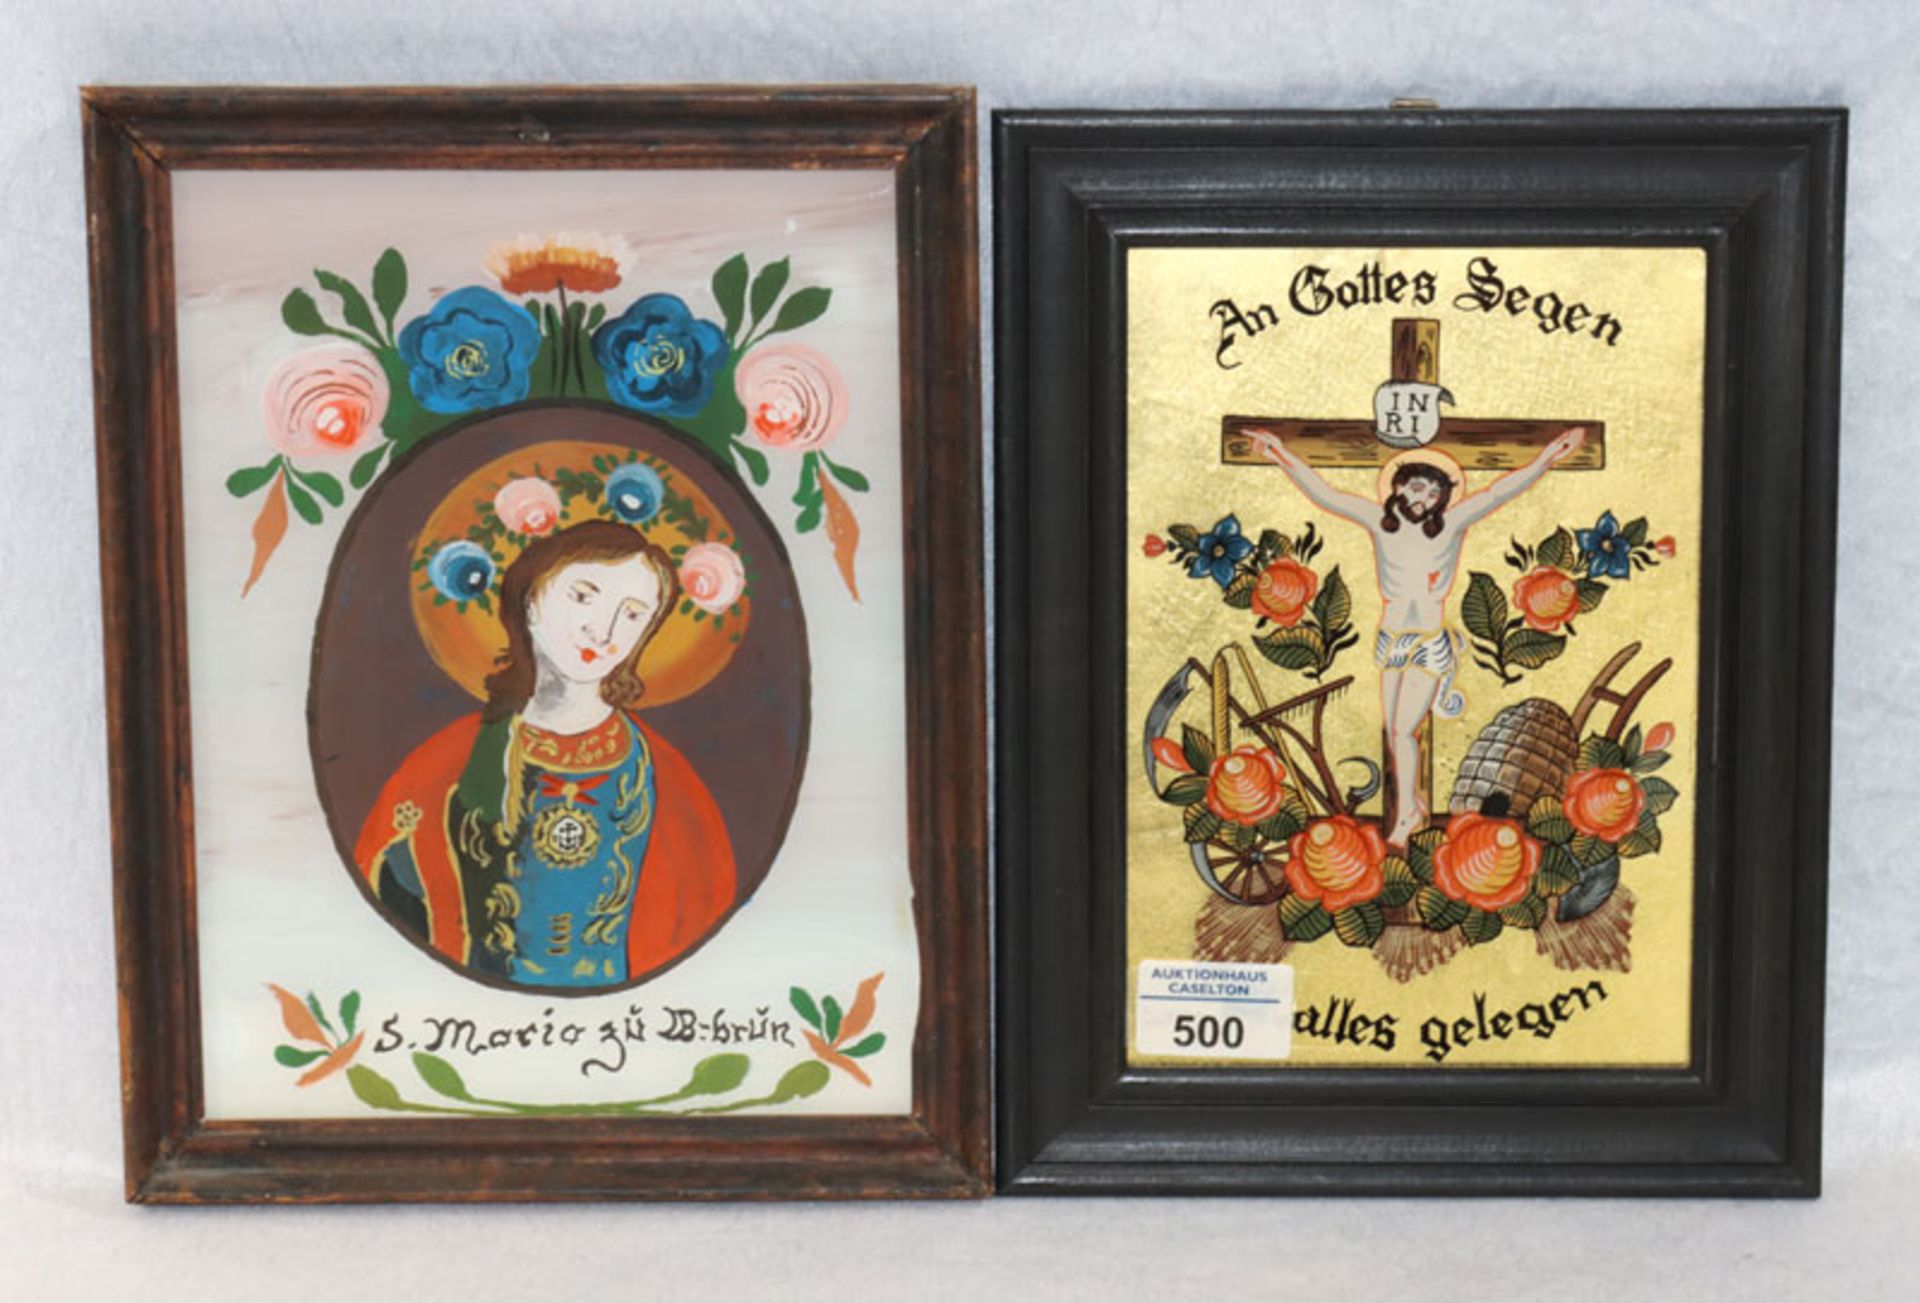 2 Hinterglasbilder 'An Gottes Segen alles gelegen' und 'S. Maria', beide gerahmt, incl. Rahmen 27 cm